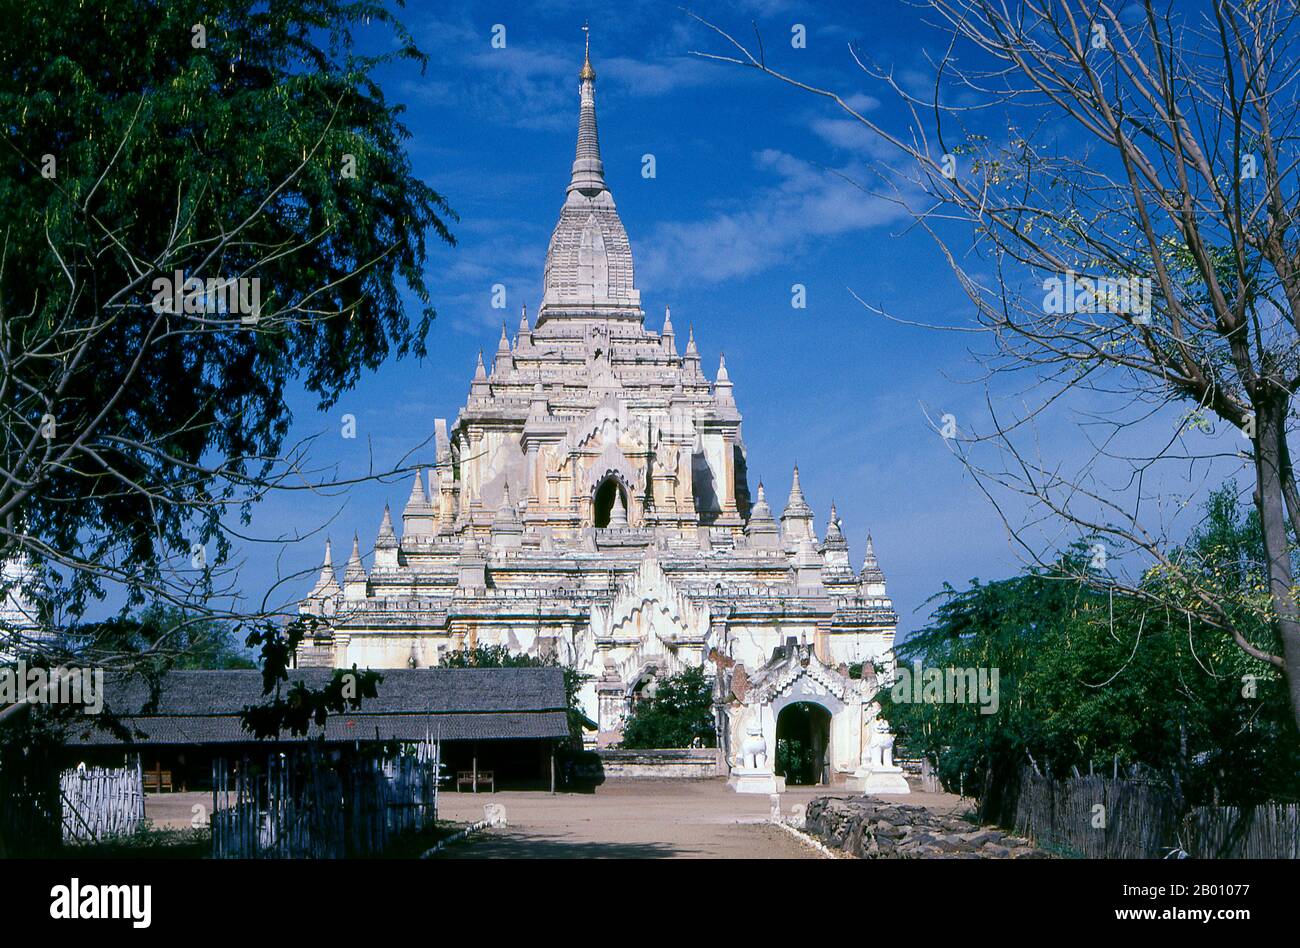 Burma: Gawdawpalin Tempel, Bagan (Pagan) Alte Stadt. Der Bau des Gawdawpalin Tempels begann während der Herrschaft von Narapatisithu (1174–1211) und wurde während der Herrschaft von Htilominlo (1121–1234) abgeschlossen. Gawdawpalin Tempel ist der zweithöchste Tempel in Bagan. Bagan, früher Pagan, wurde hauptsächlich zwischen dem 11th. Und 13th. Jahrhundert erbaut. Offiziell Arimaddanapura oder Arimaddana (die Stadt des feindlichen Crusher) und auch als Tambadipa (das Land des Kupfers) oder Tassadessa (das vertrocknende Land) bekannt, war es die Hauptstadt mehrerer alter Königreiche in Burma. Stockfoto